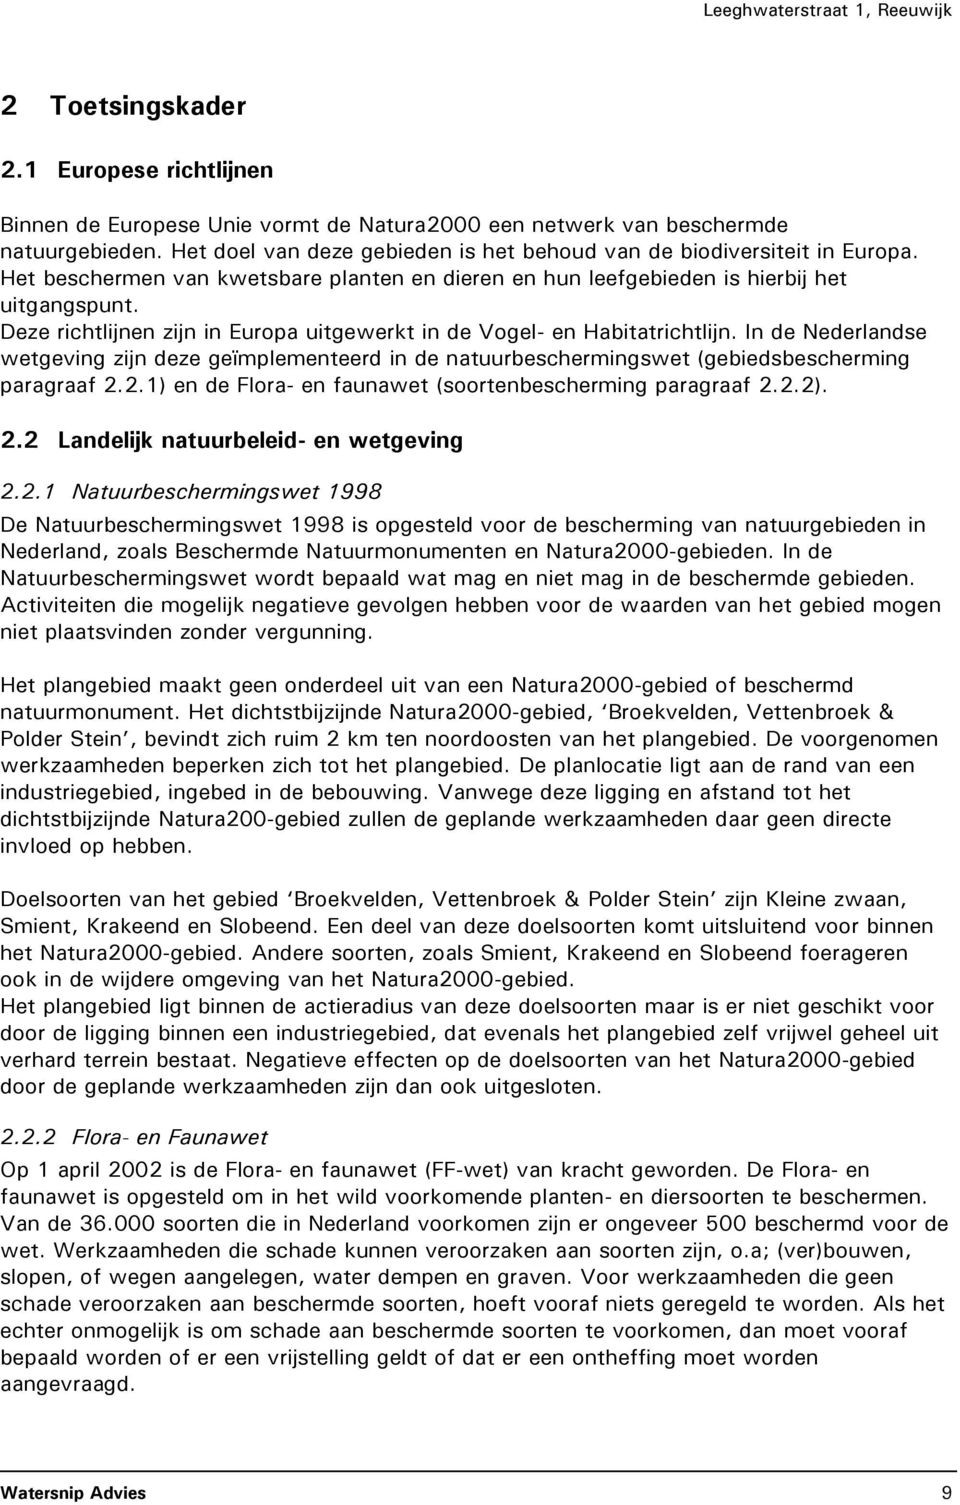 Deze richtlijnen zijn in Europa uitgewerkt in de Vogel- en Habitatrichtlijn. In de Nederlandse wetgeving zijn deze geïmplementeerd in de natuurbeschermingswet (gebiedsbescherming paragraaf 2.